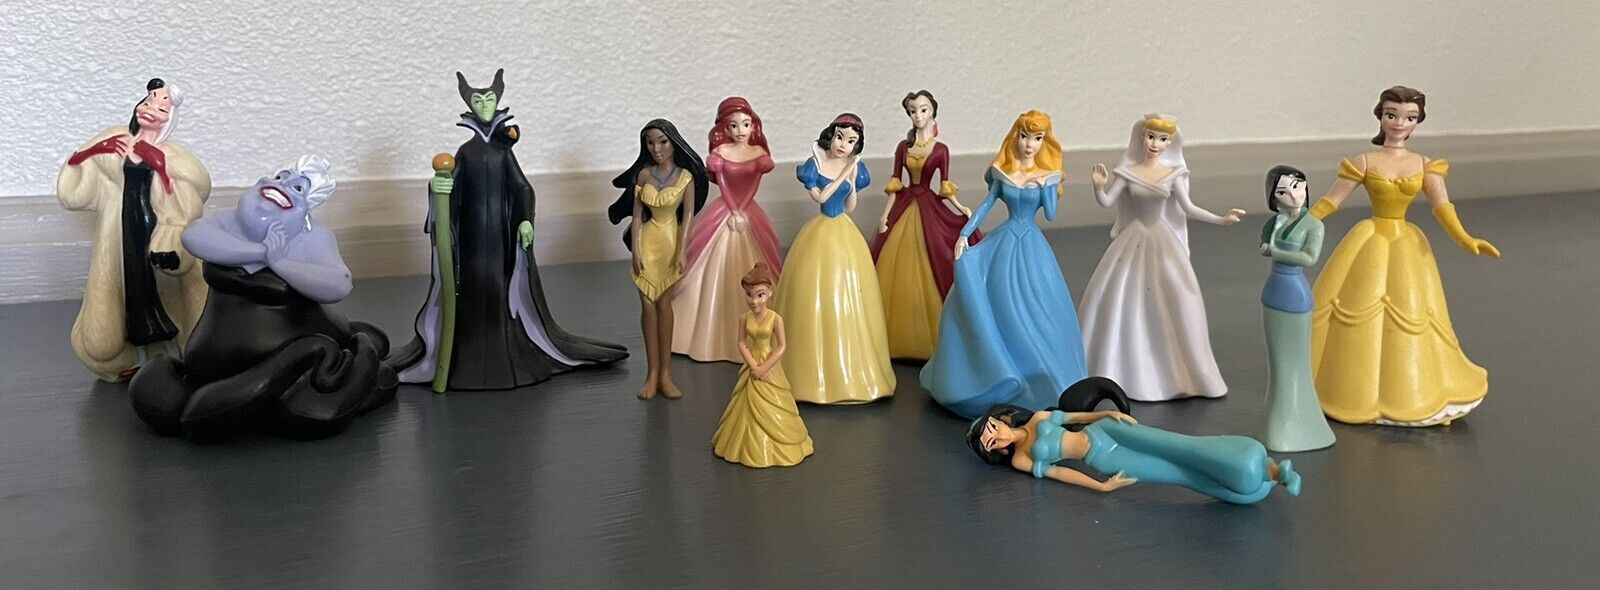 Disney - Villains and Princess figures - lot of 13 